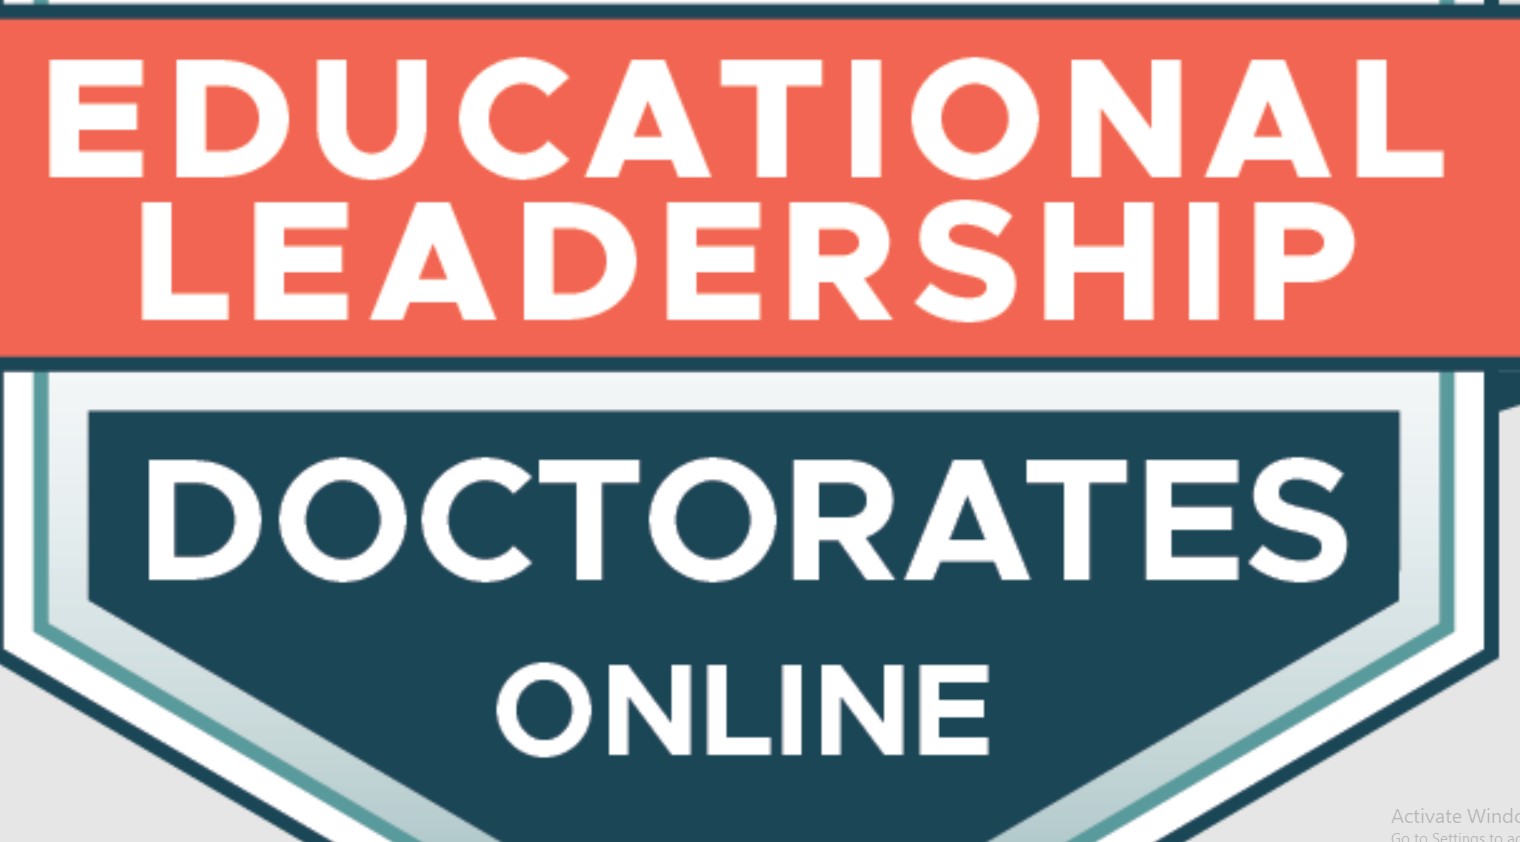 online doctoral programs educational leadership